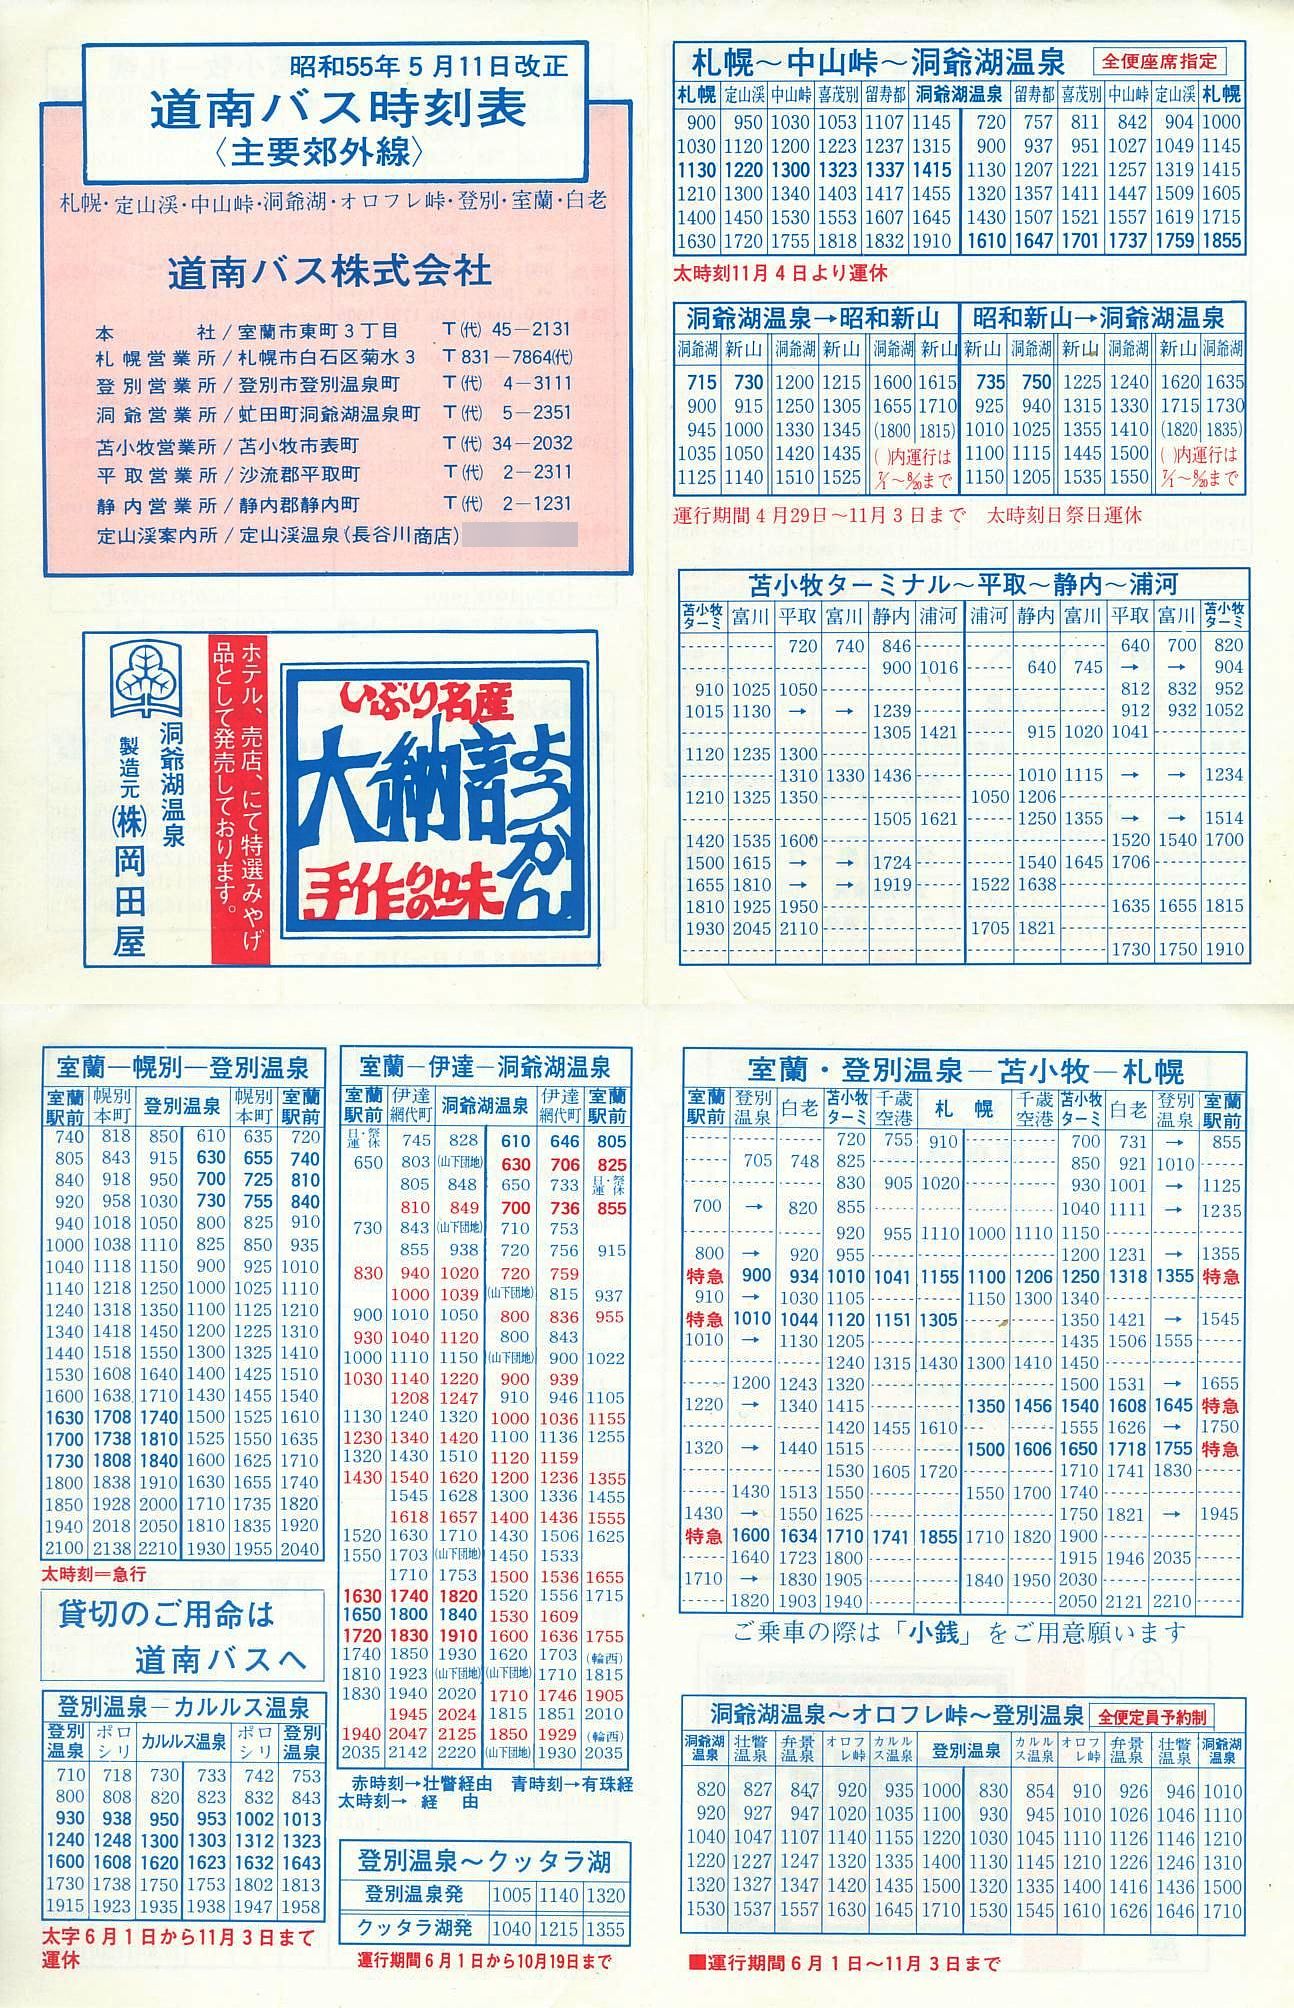 1980-05-11改正_道南バス_主要郊外線時刻表